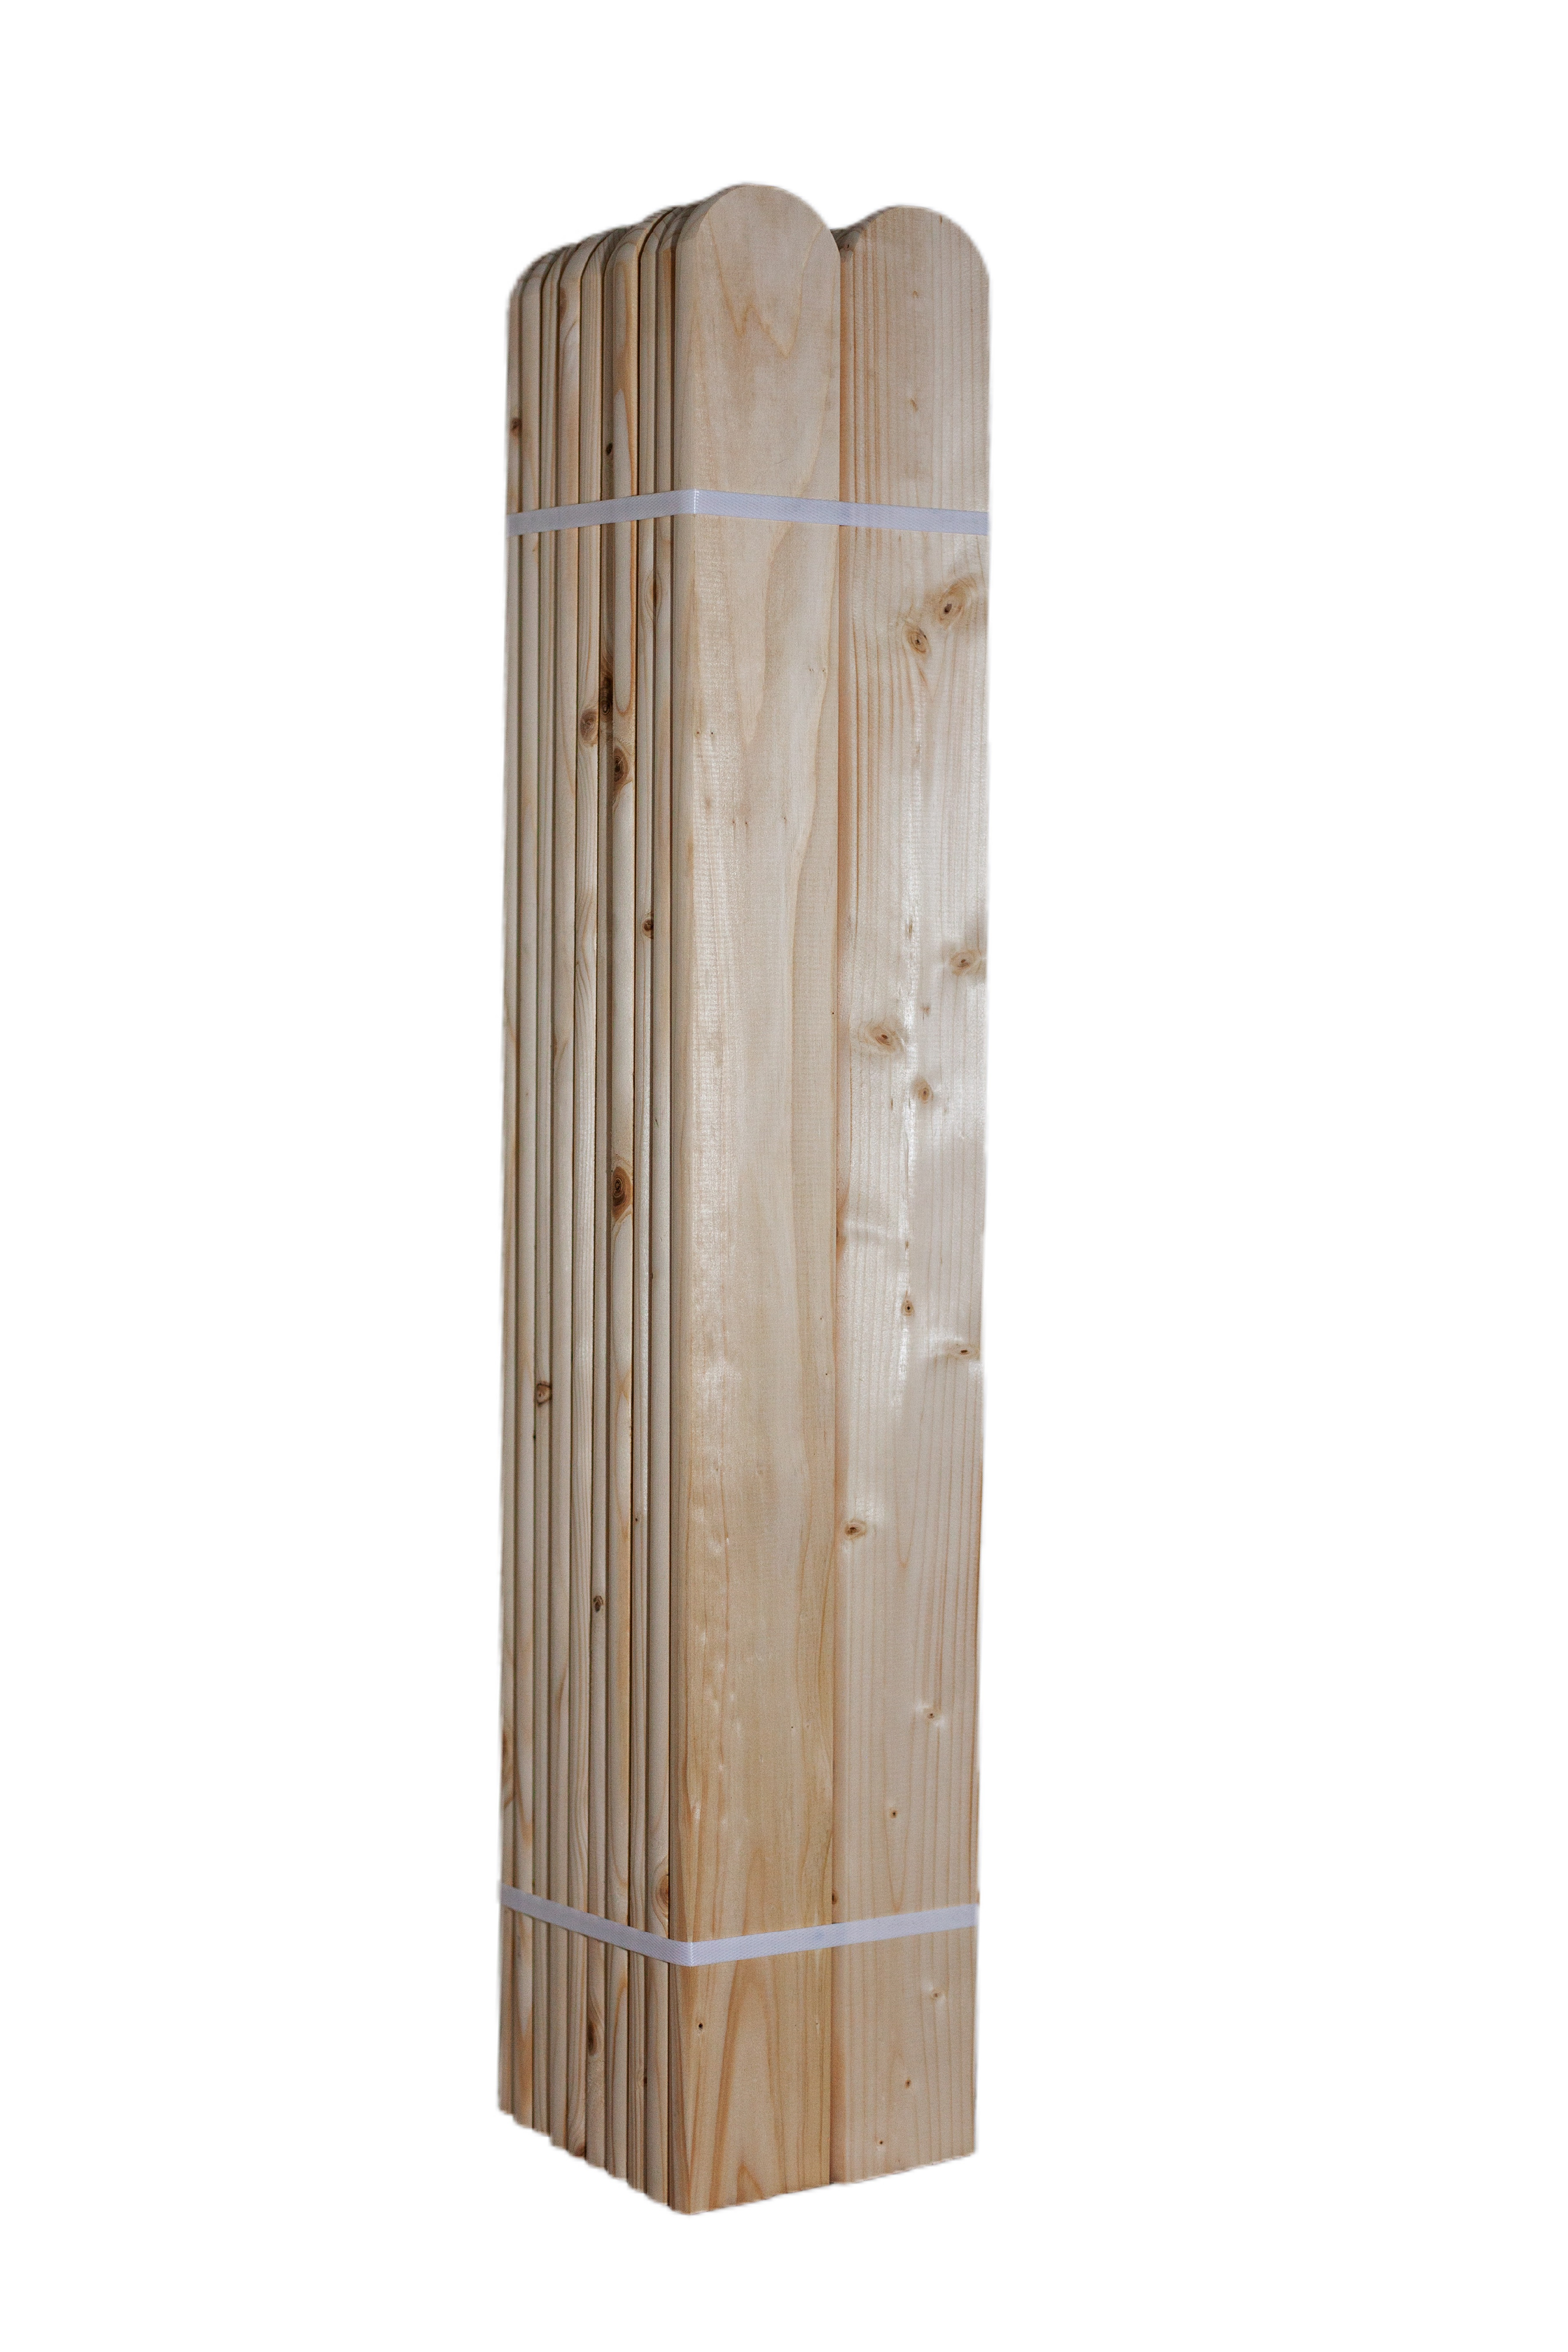 LC Dřevěná smrková plotovka, 20 x 90 mm zakulacená 1ks Výška plotovek: 90 cm